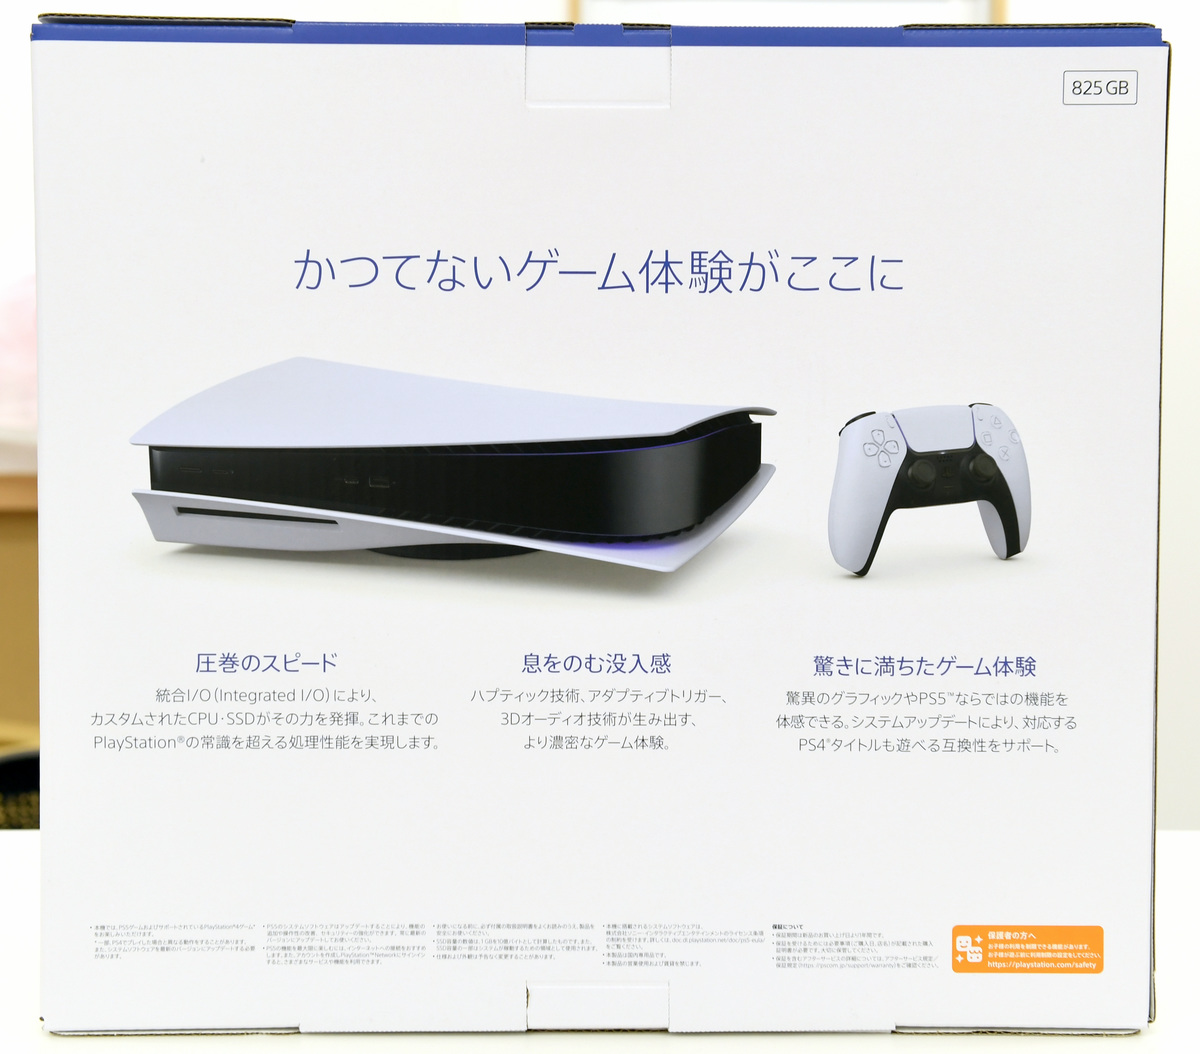 ソニーの次世代ゲーム機「PlayStation 5」がついに発売、周辺機器 